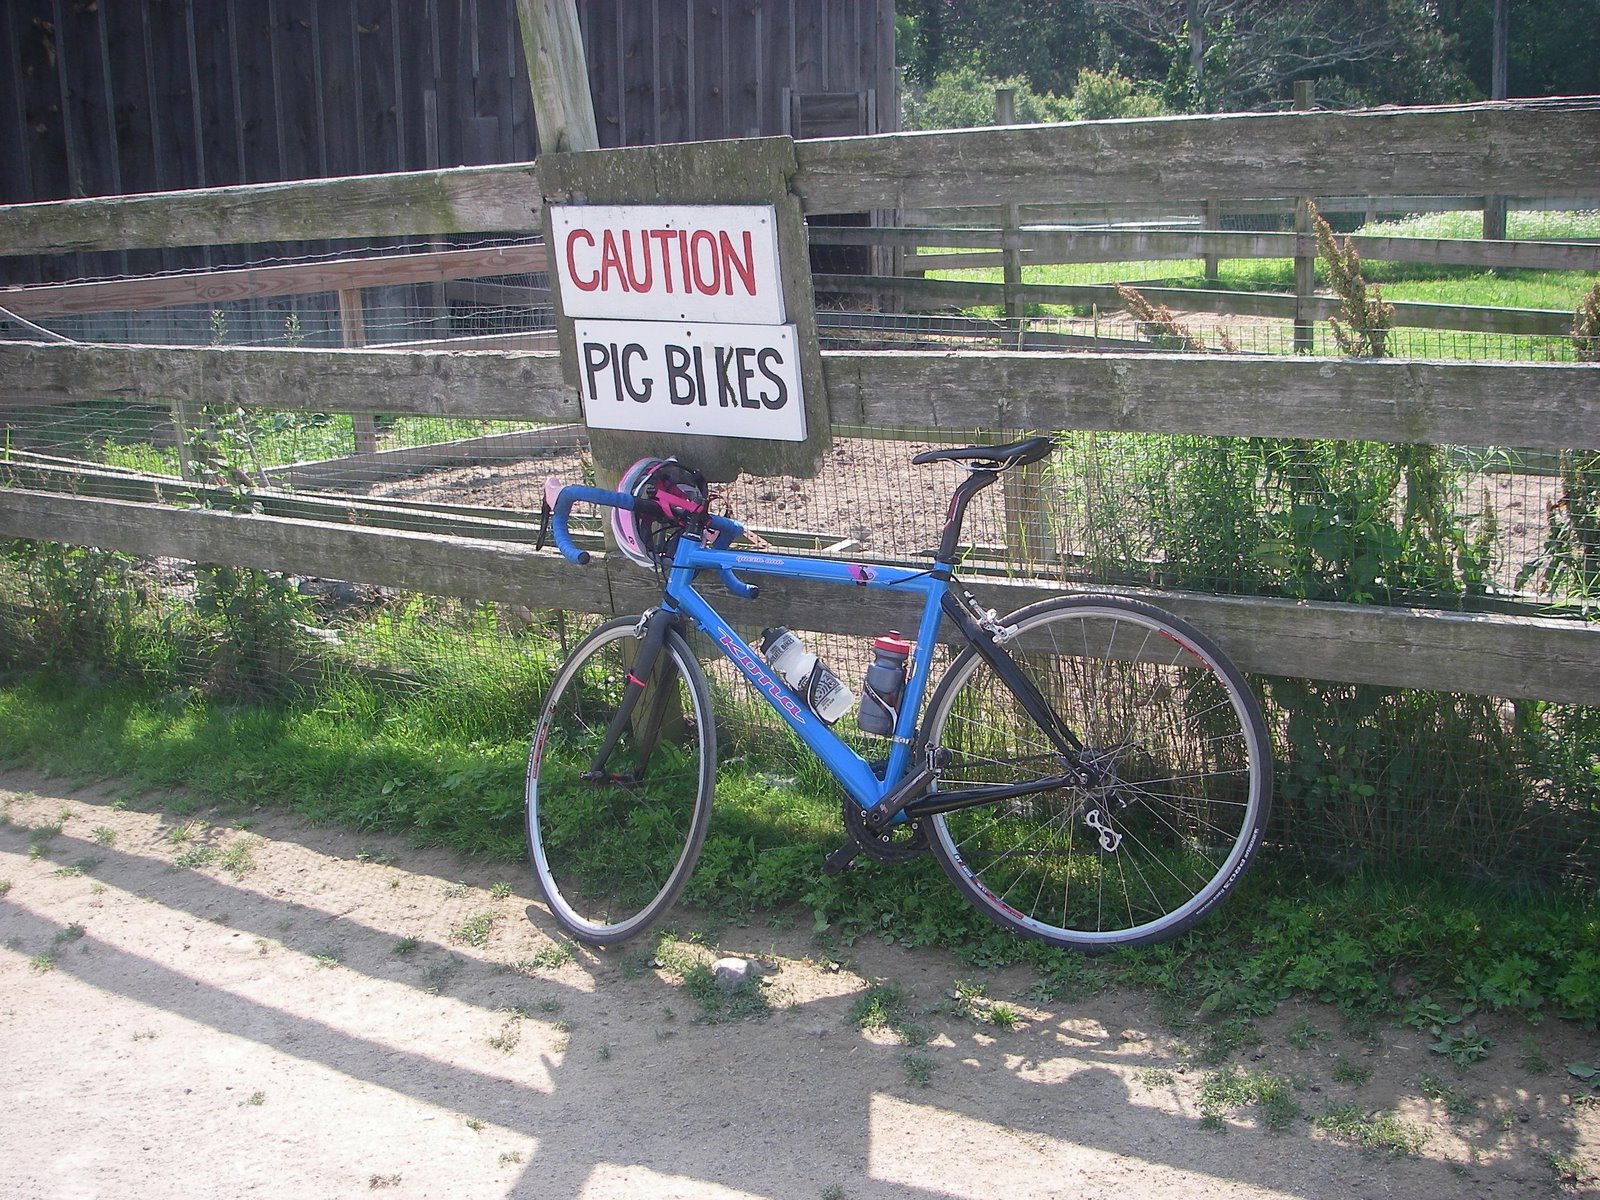 [Summer+in+Gloucester+2008+pig+bikes.jpg]